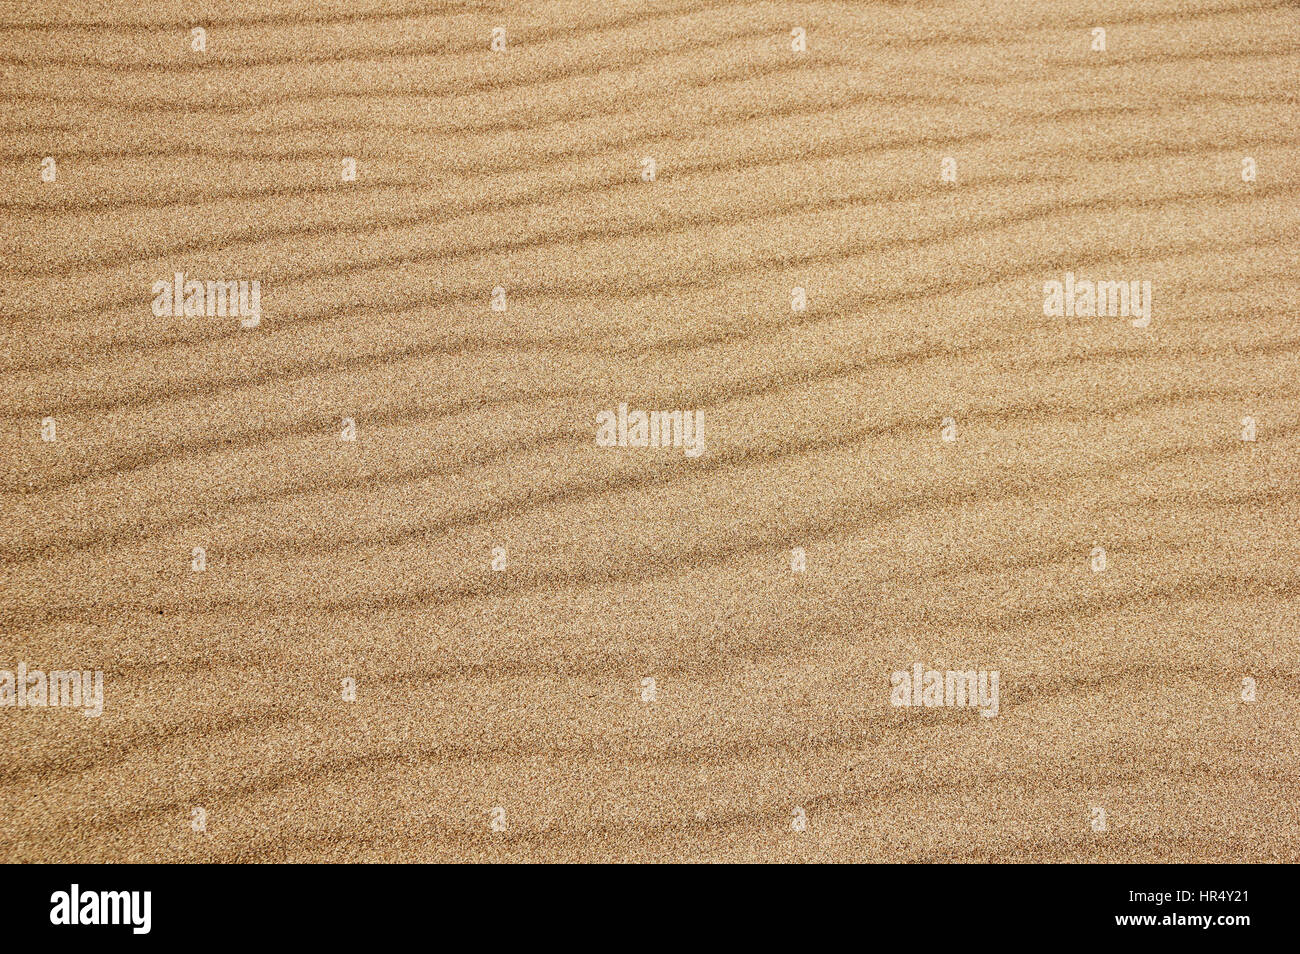 Detalle de lijar la superficie ondulada en el gran parque nacional de las dunas de arena Foto de stock